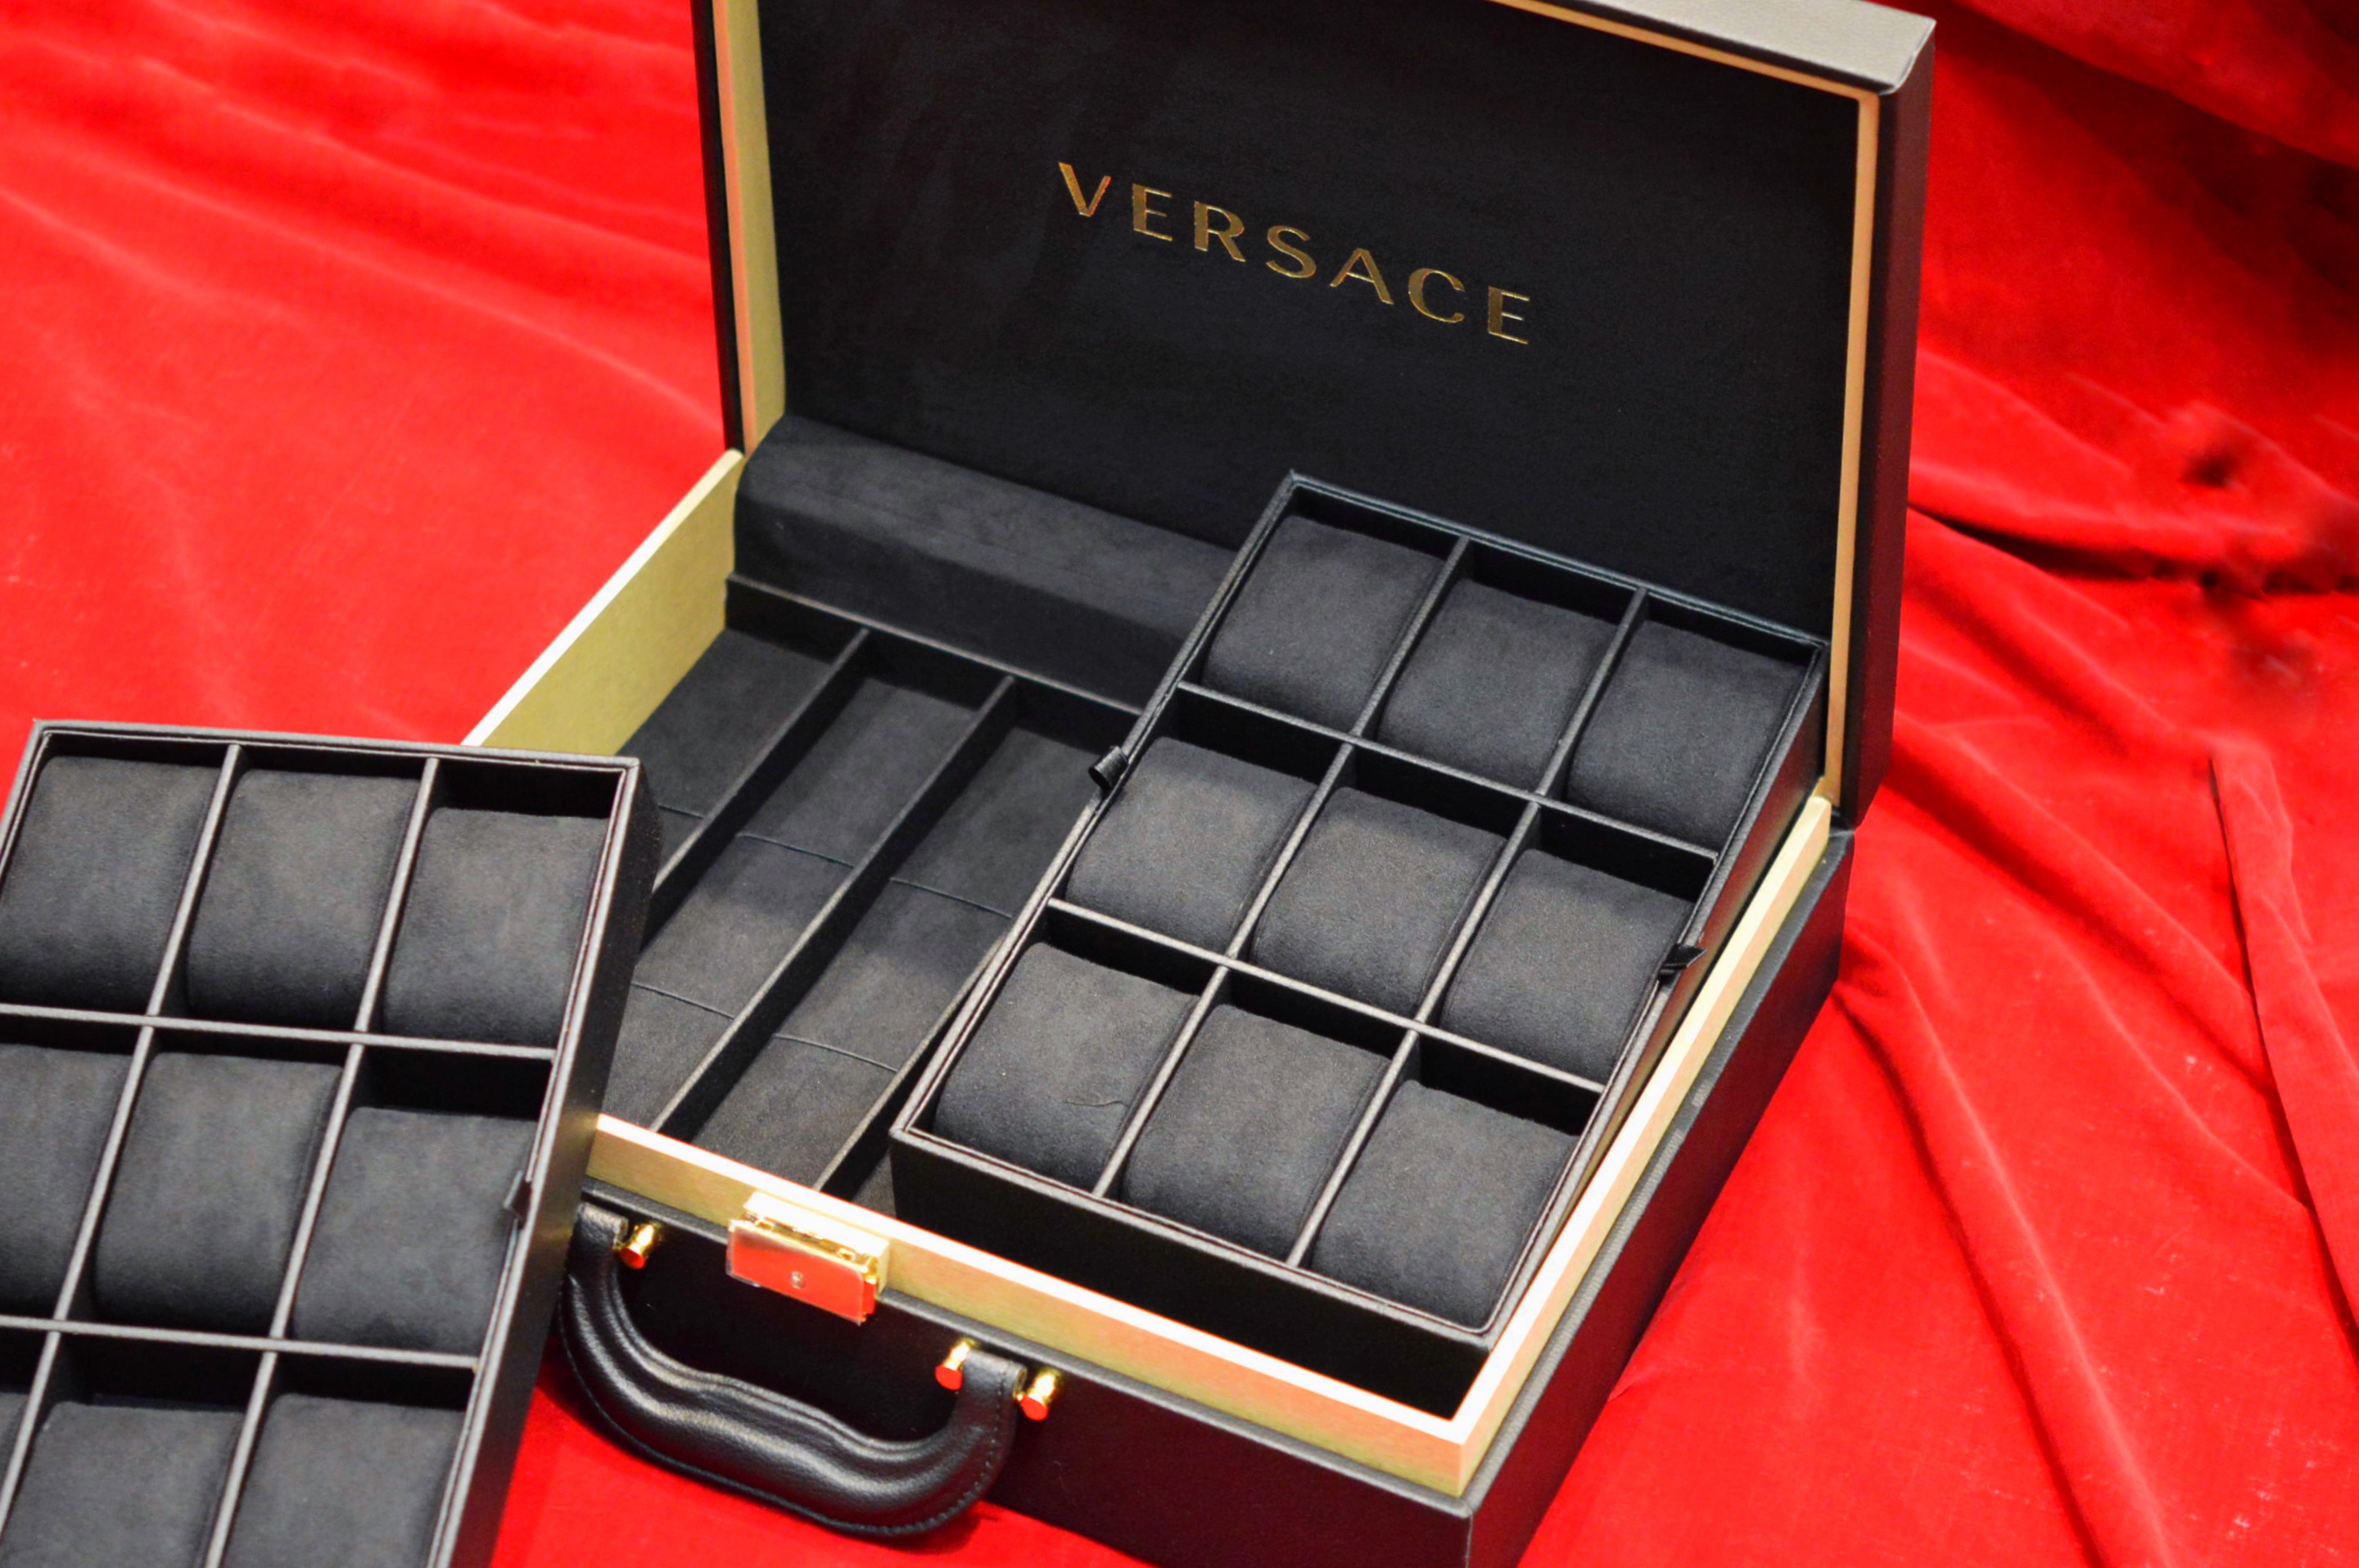 ヴェルサーチ(VERSACE) | ブランド腕時計の正規販売店紹介サイトGressive/グレッシブ